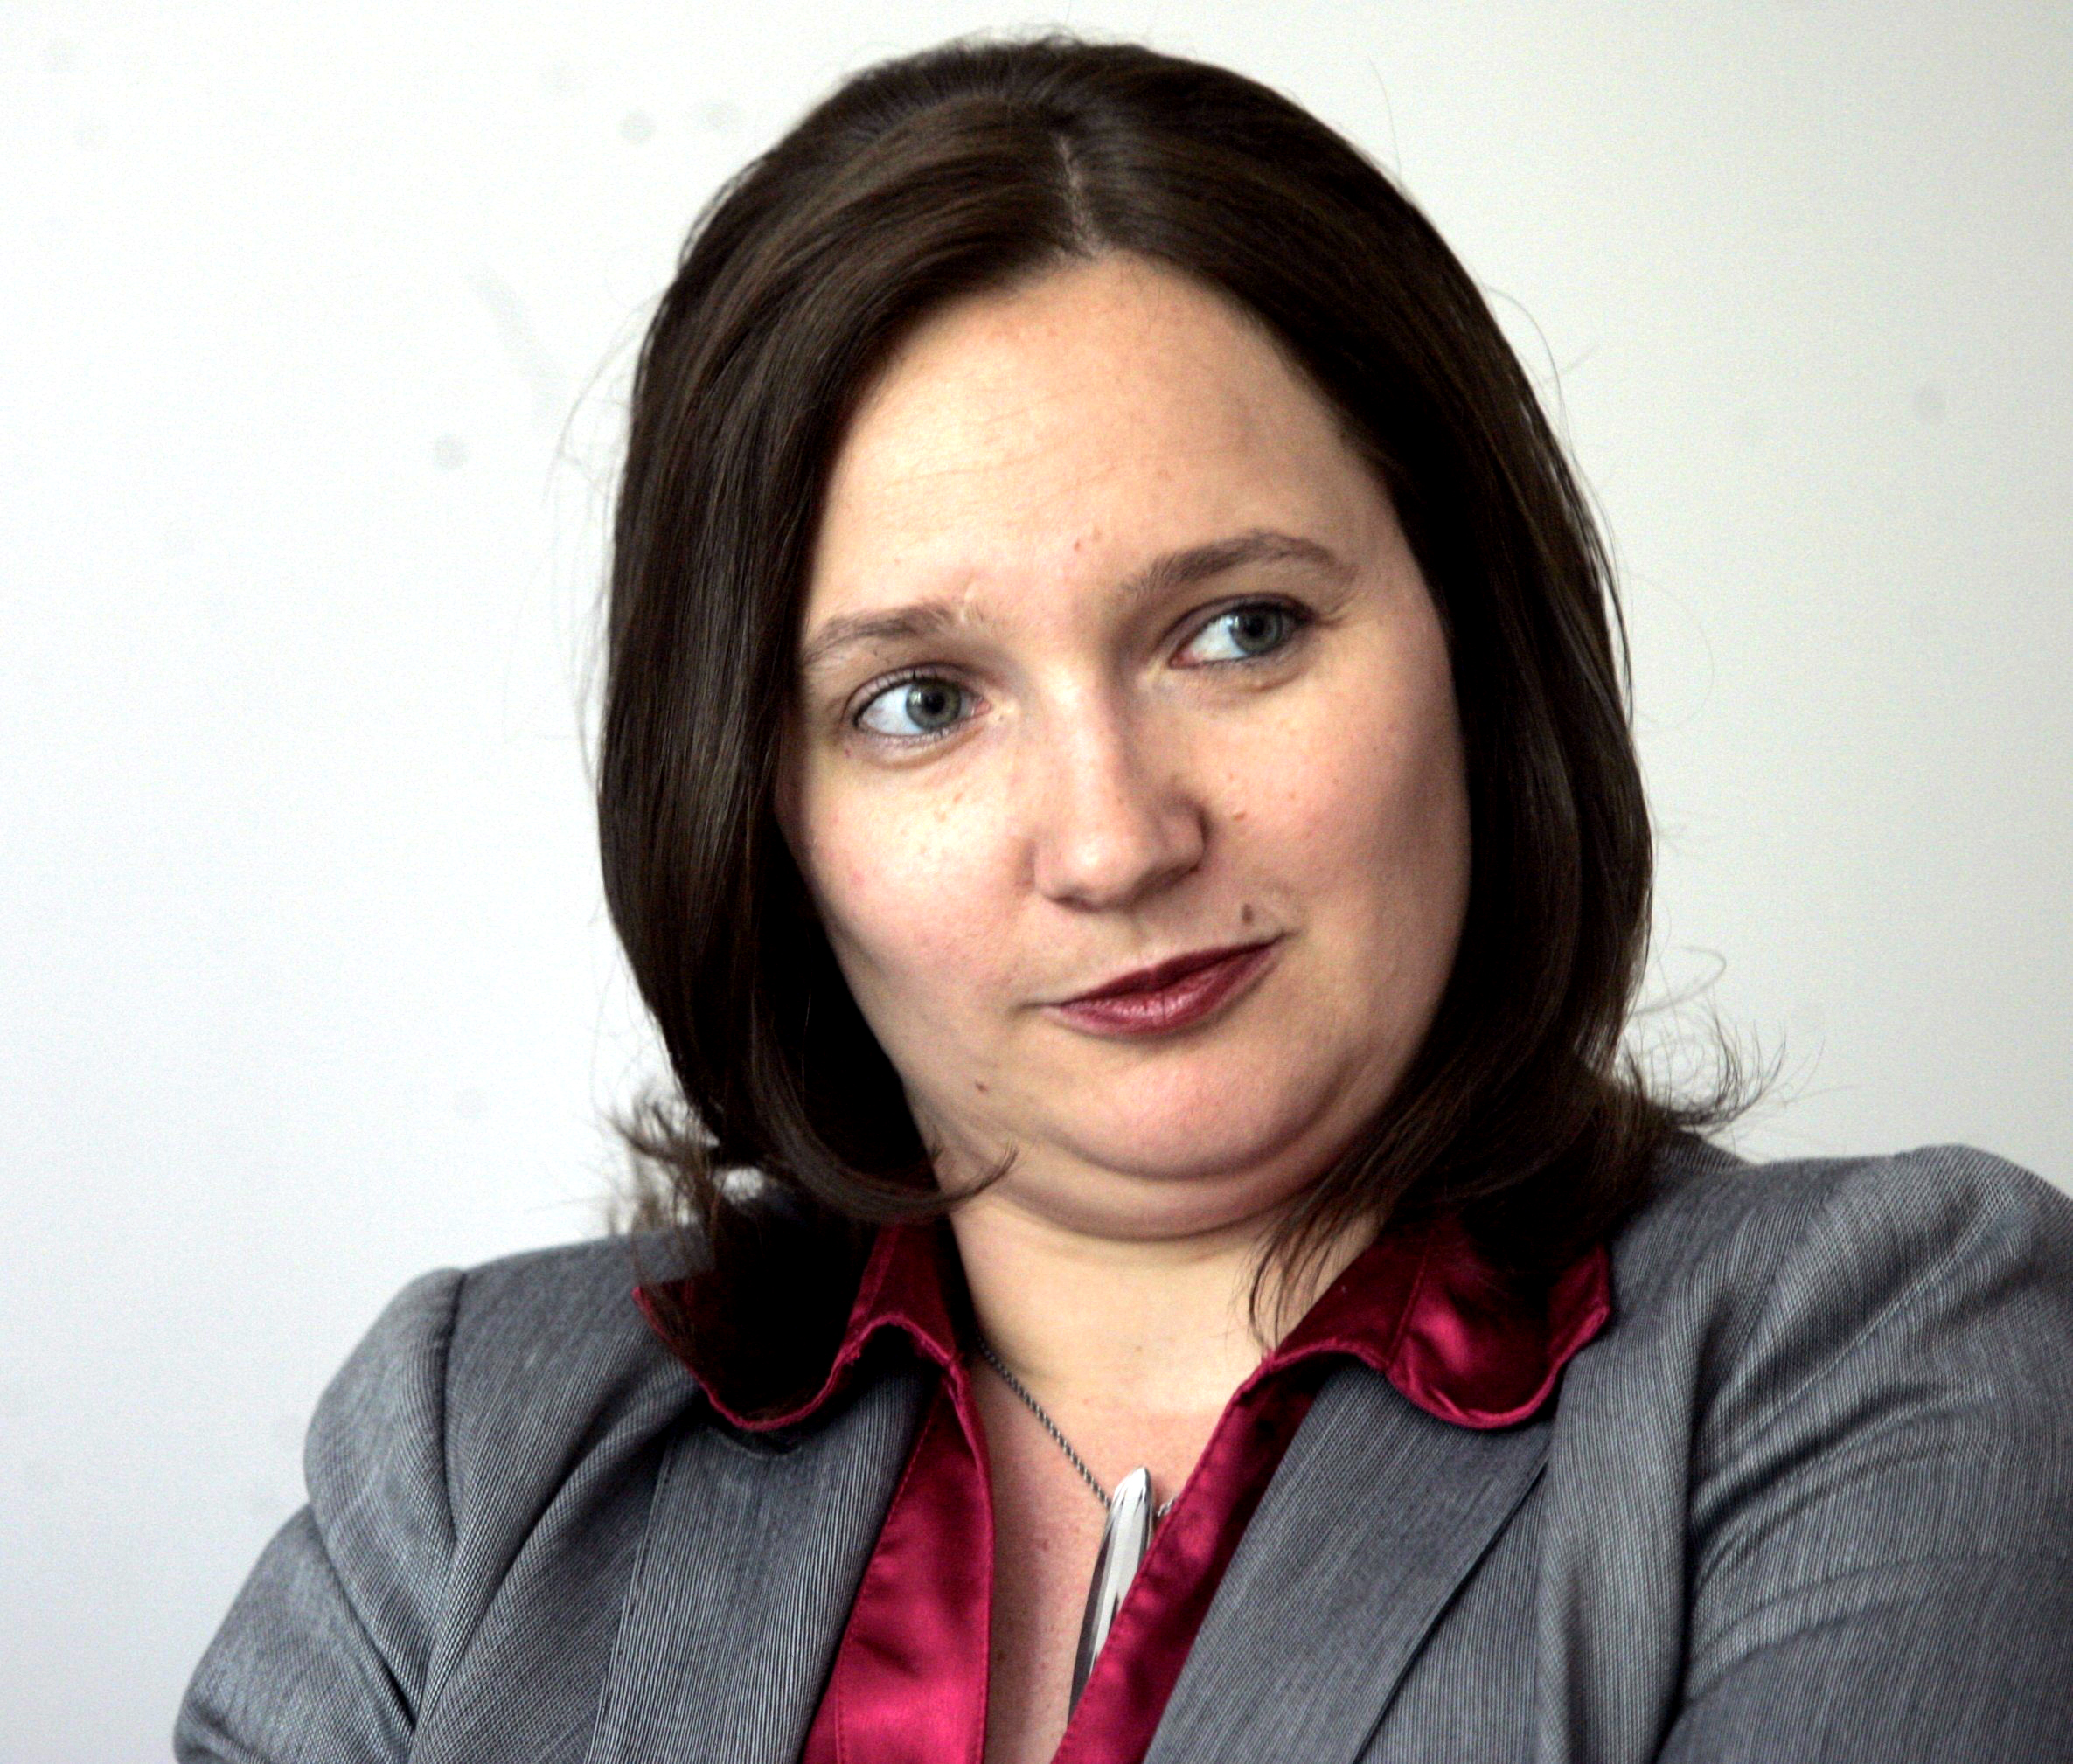 Simona Drenik si je za nagrado zaslužila novo službo pri Uradu varuha človekovih pravic. (Foto: STA)